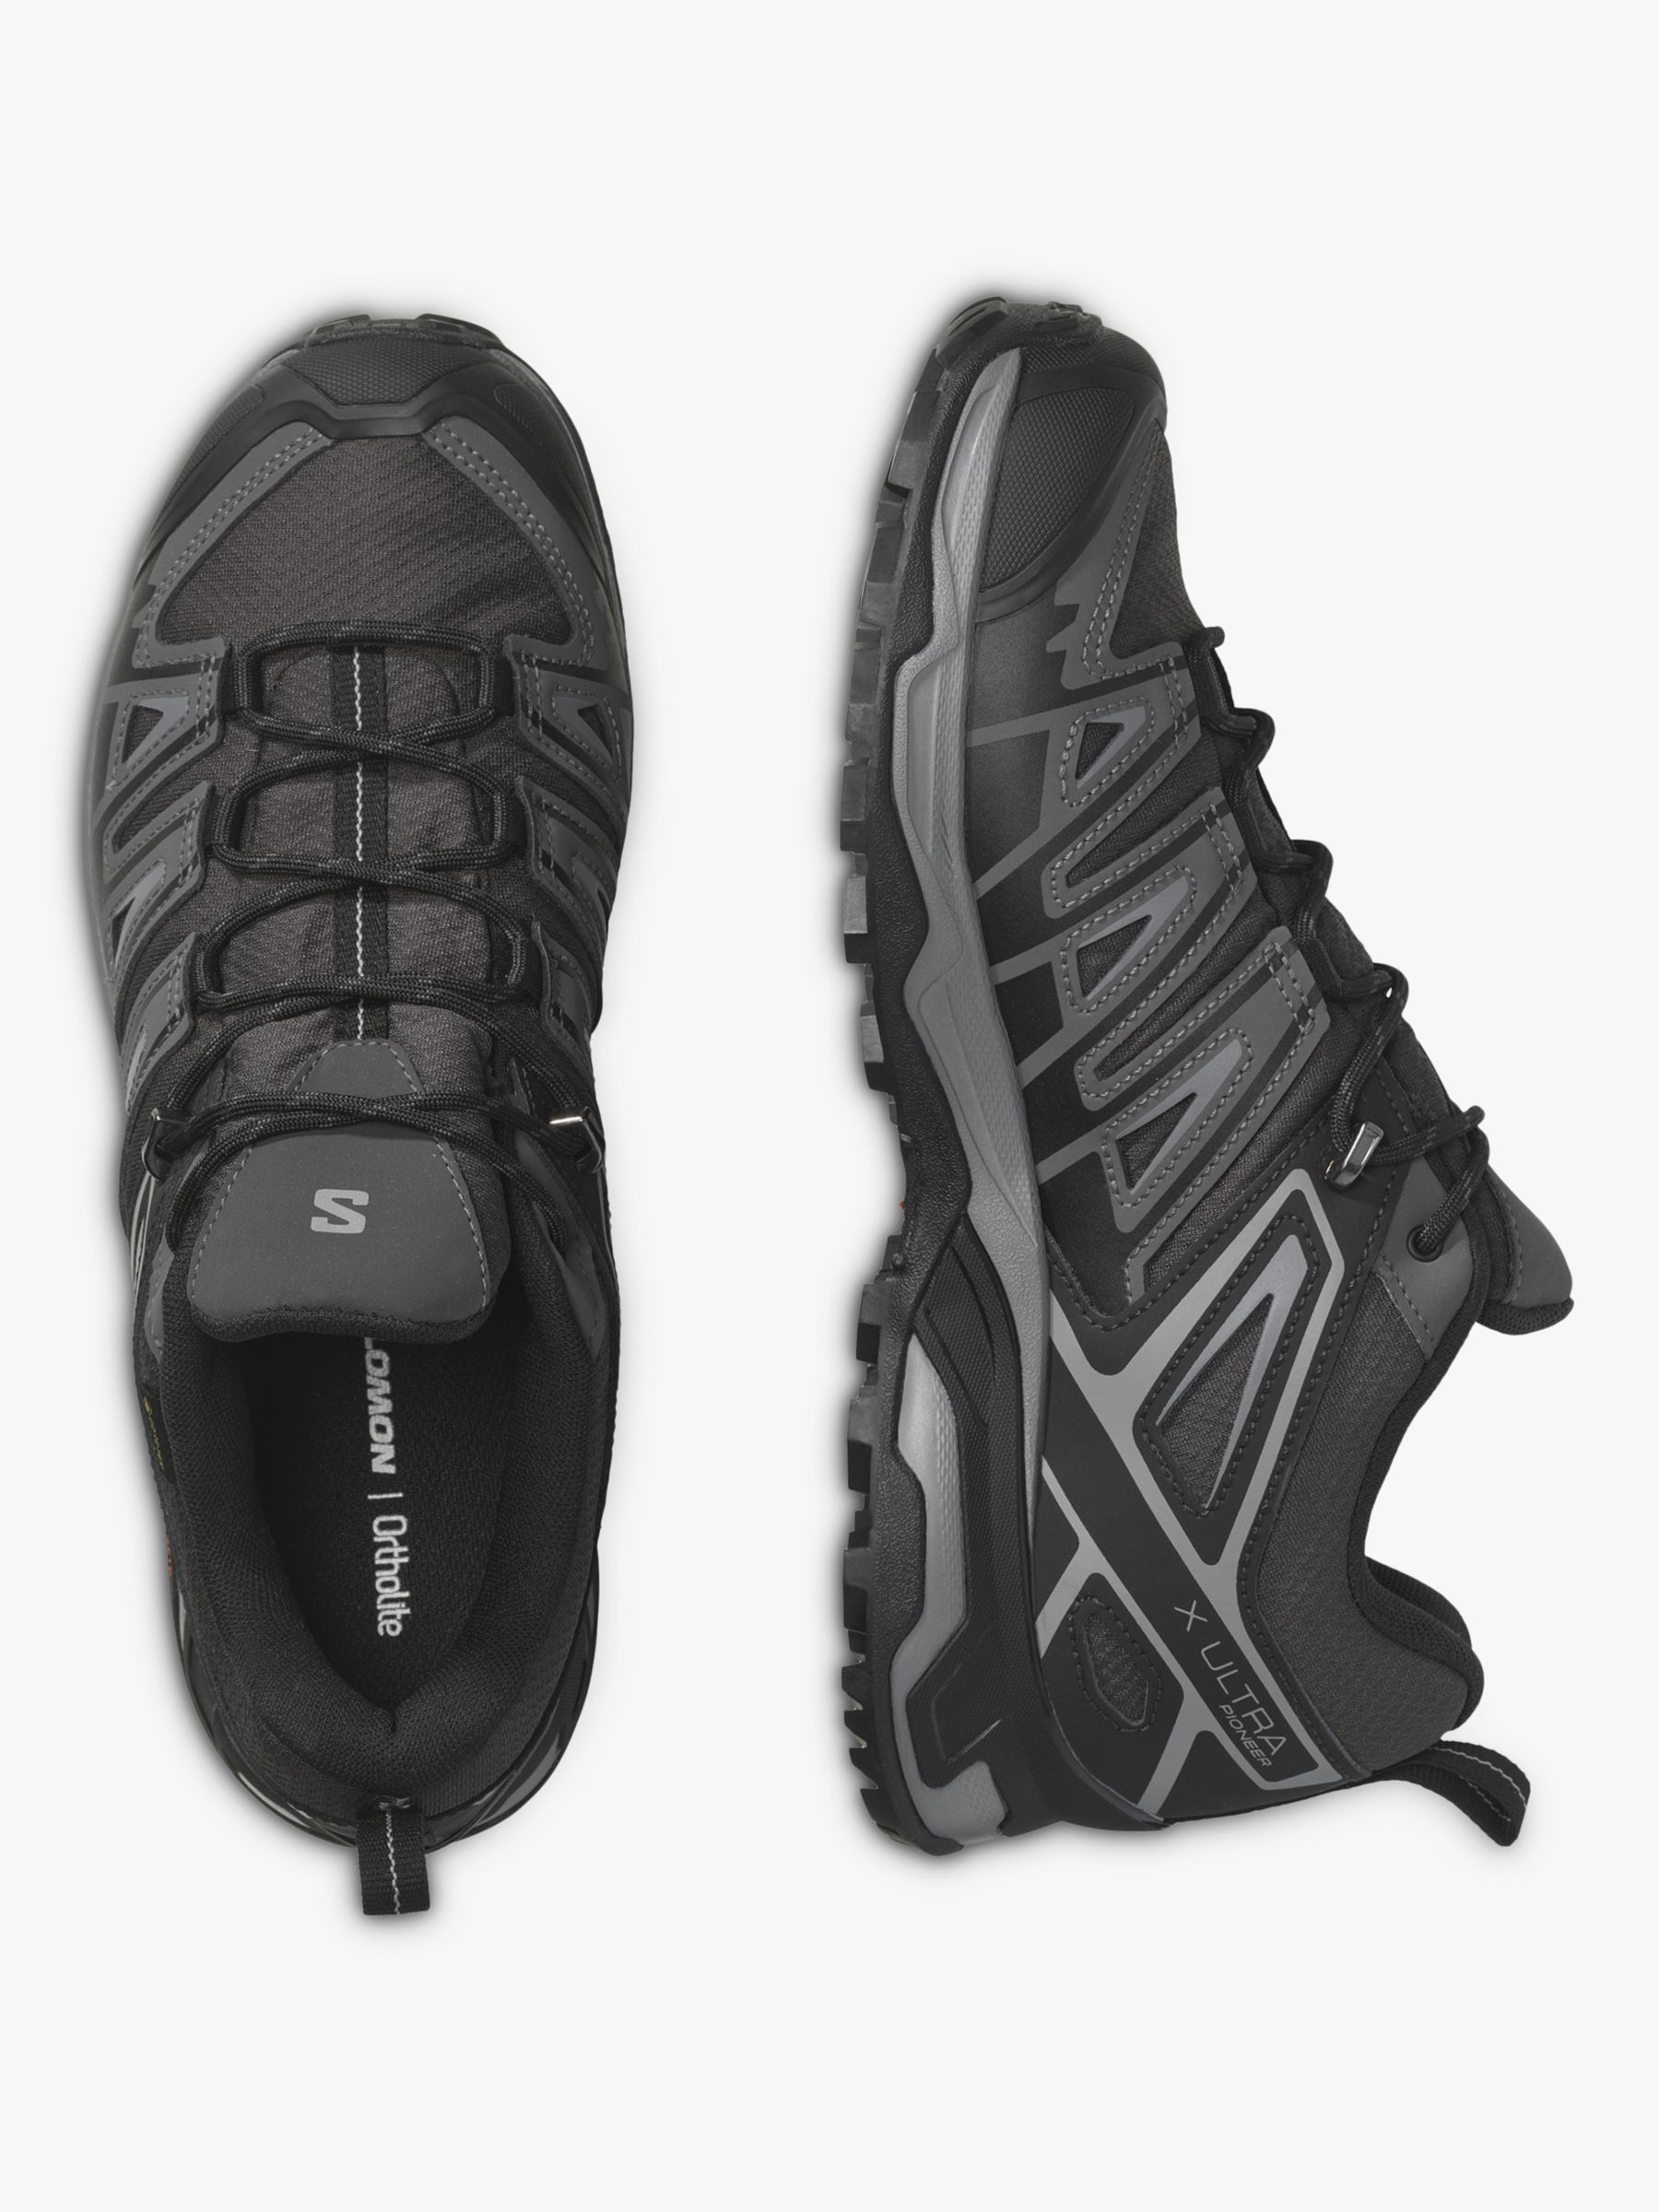 Salomon X Ultra Pioneer Men's Waterproof Gore-Tex Shoes, Phantom/Black Lewis & Partners